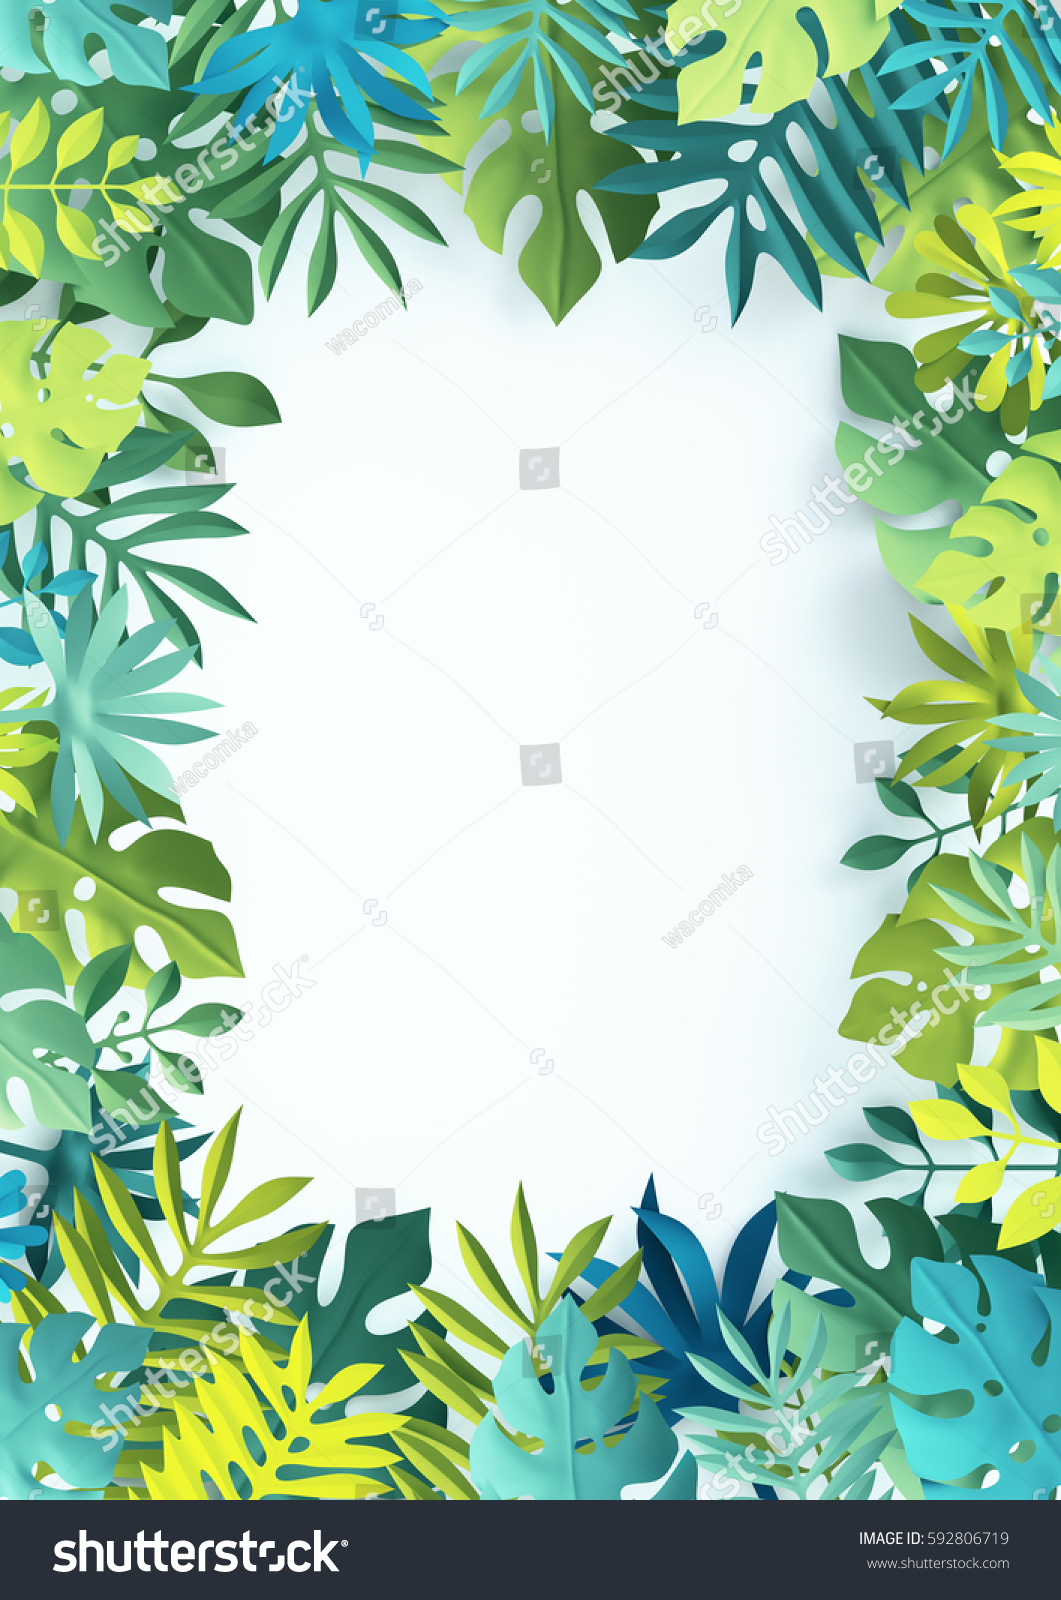 3dレンダリング 熱帯のモンステラヤシの葉 紙工 ジャングルの壁紙 正方形のフレーム 白い背景 のイラスト素材